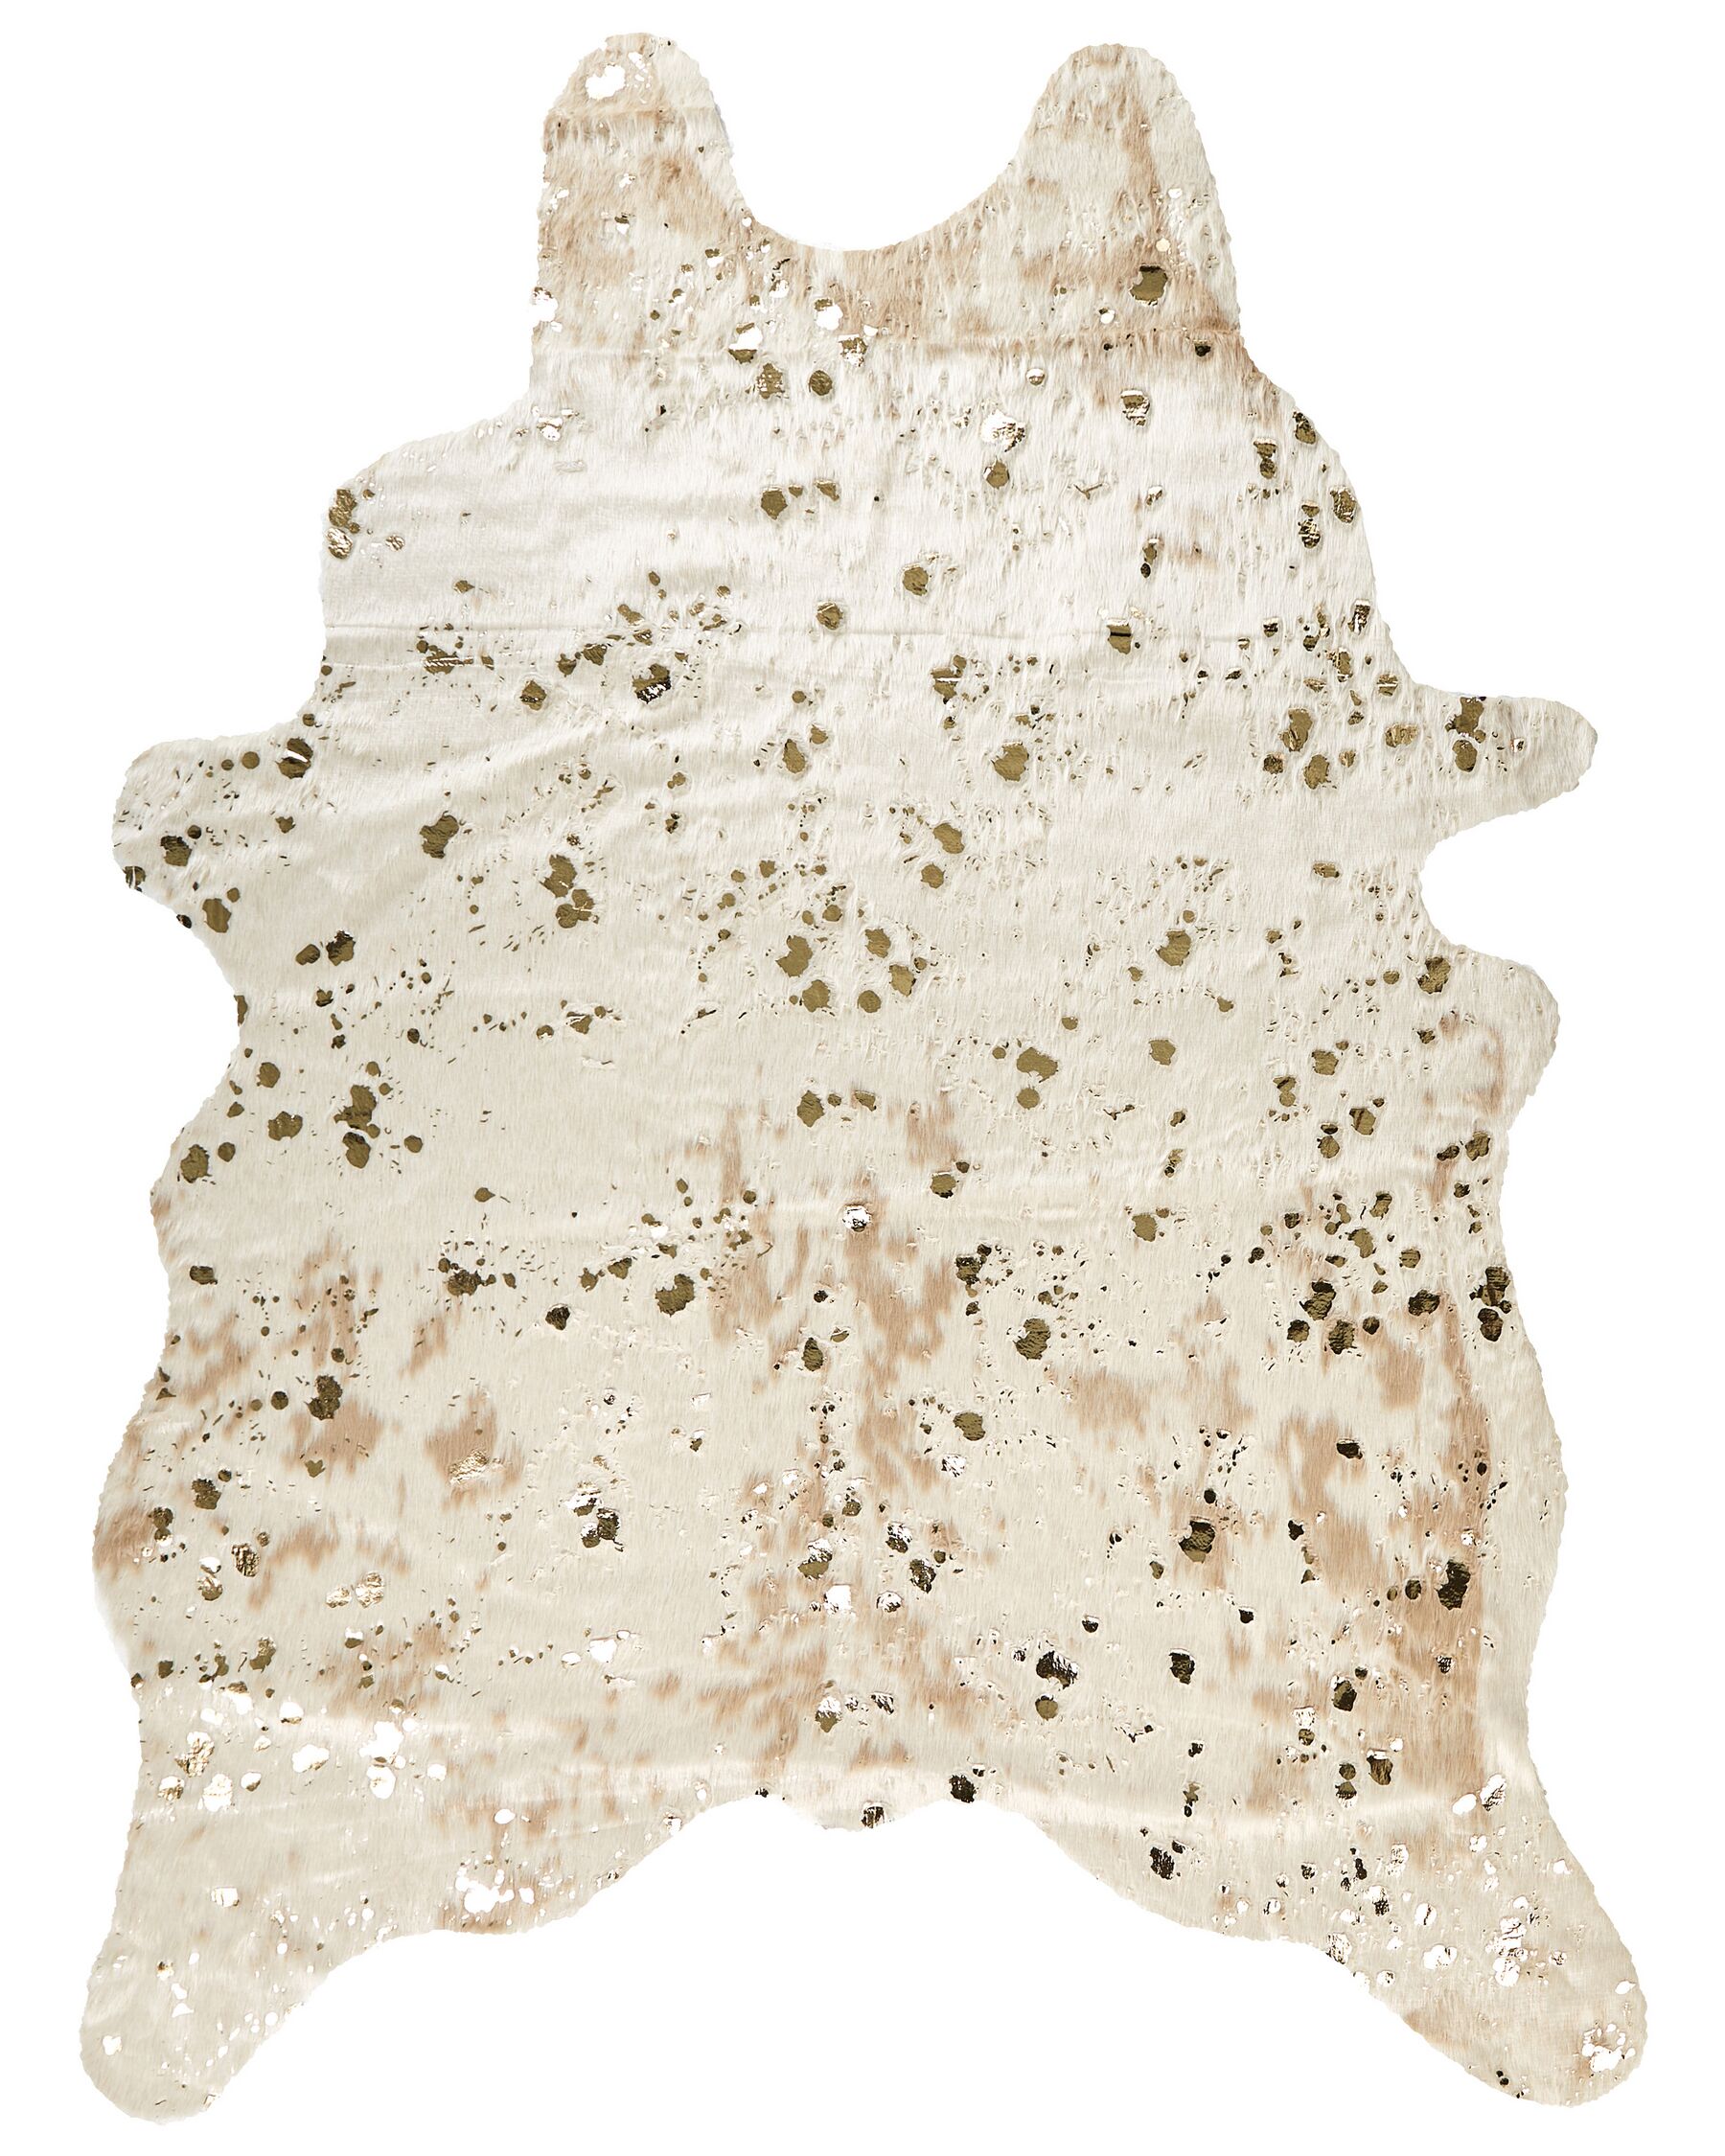 Tapis imitation peau de vache avec taches 150 x 200 cm beige et doré BOGONG_820355